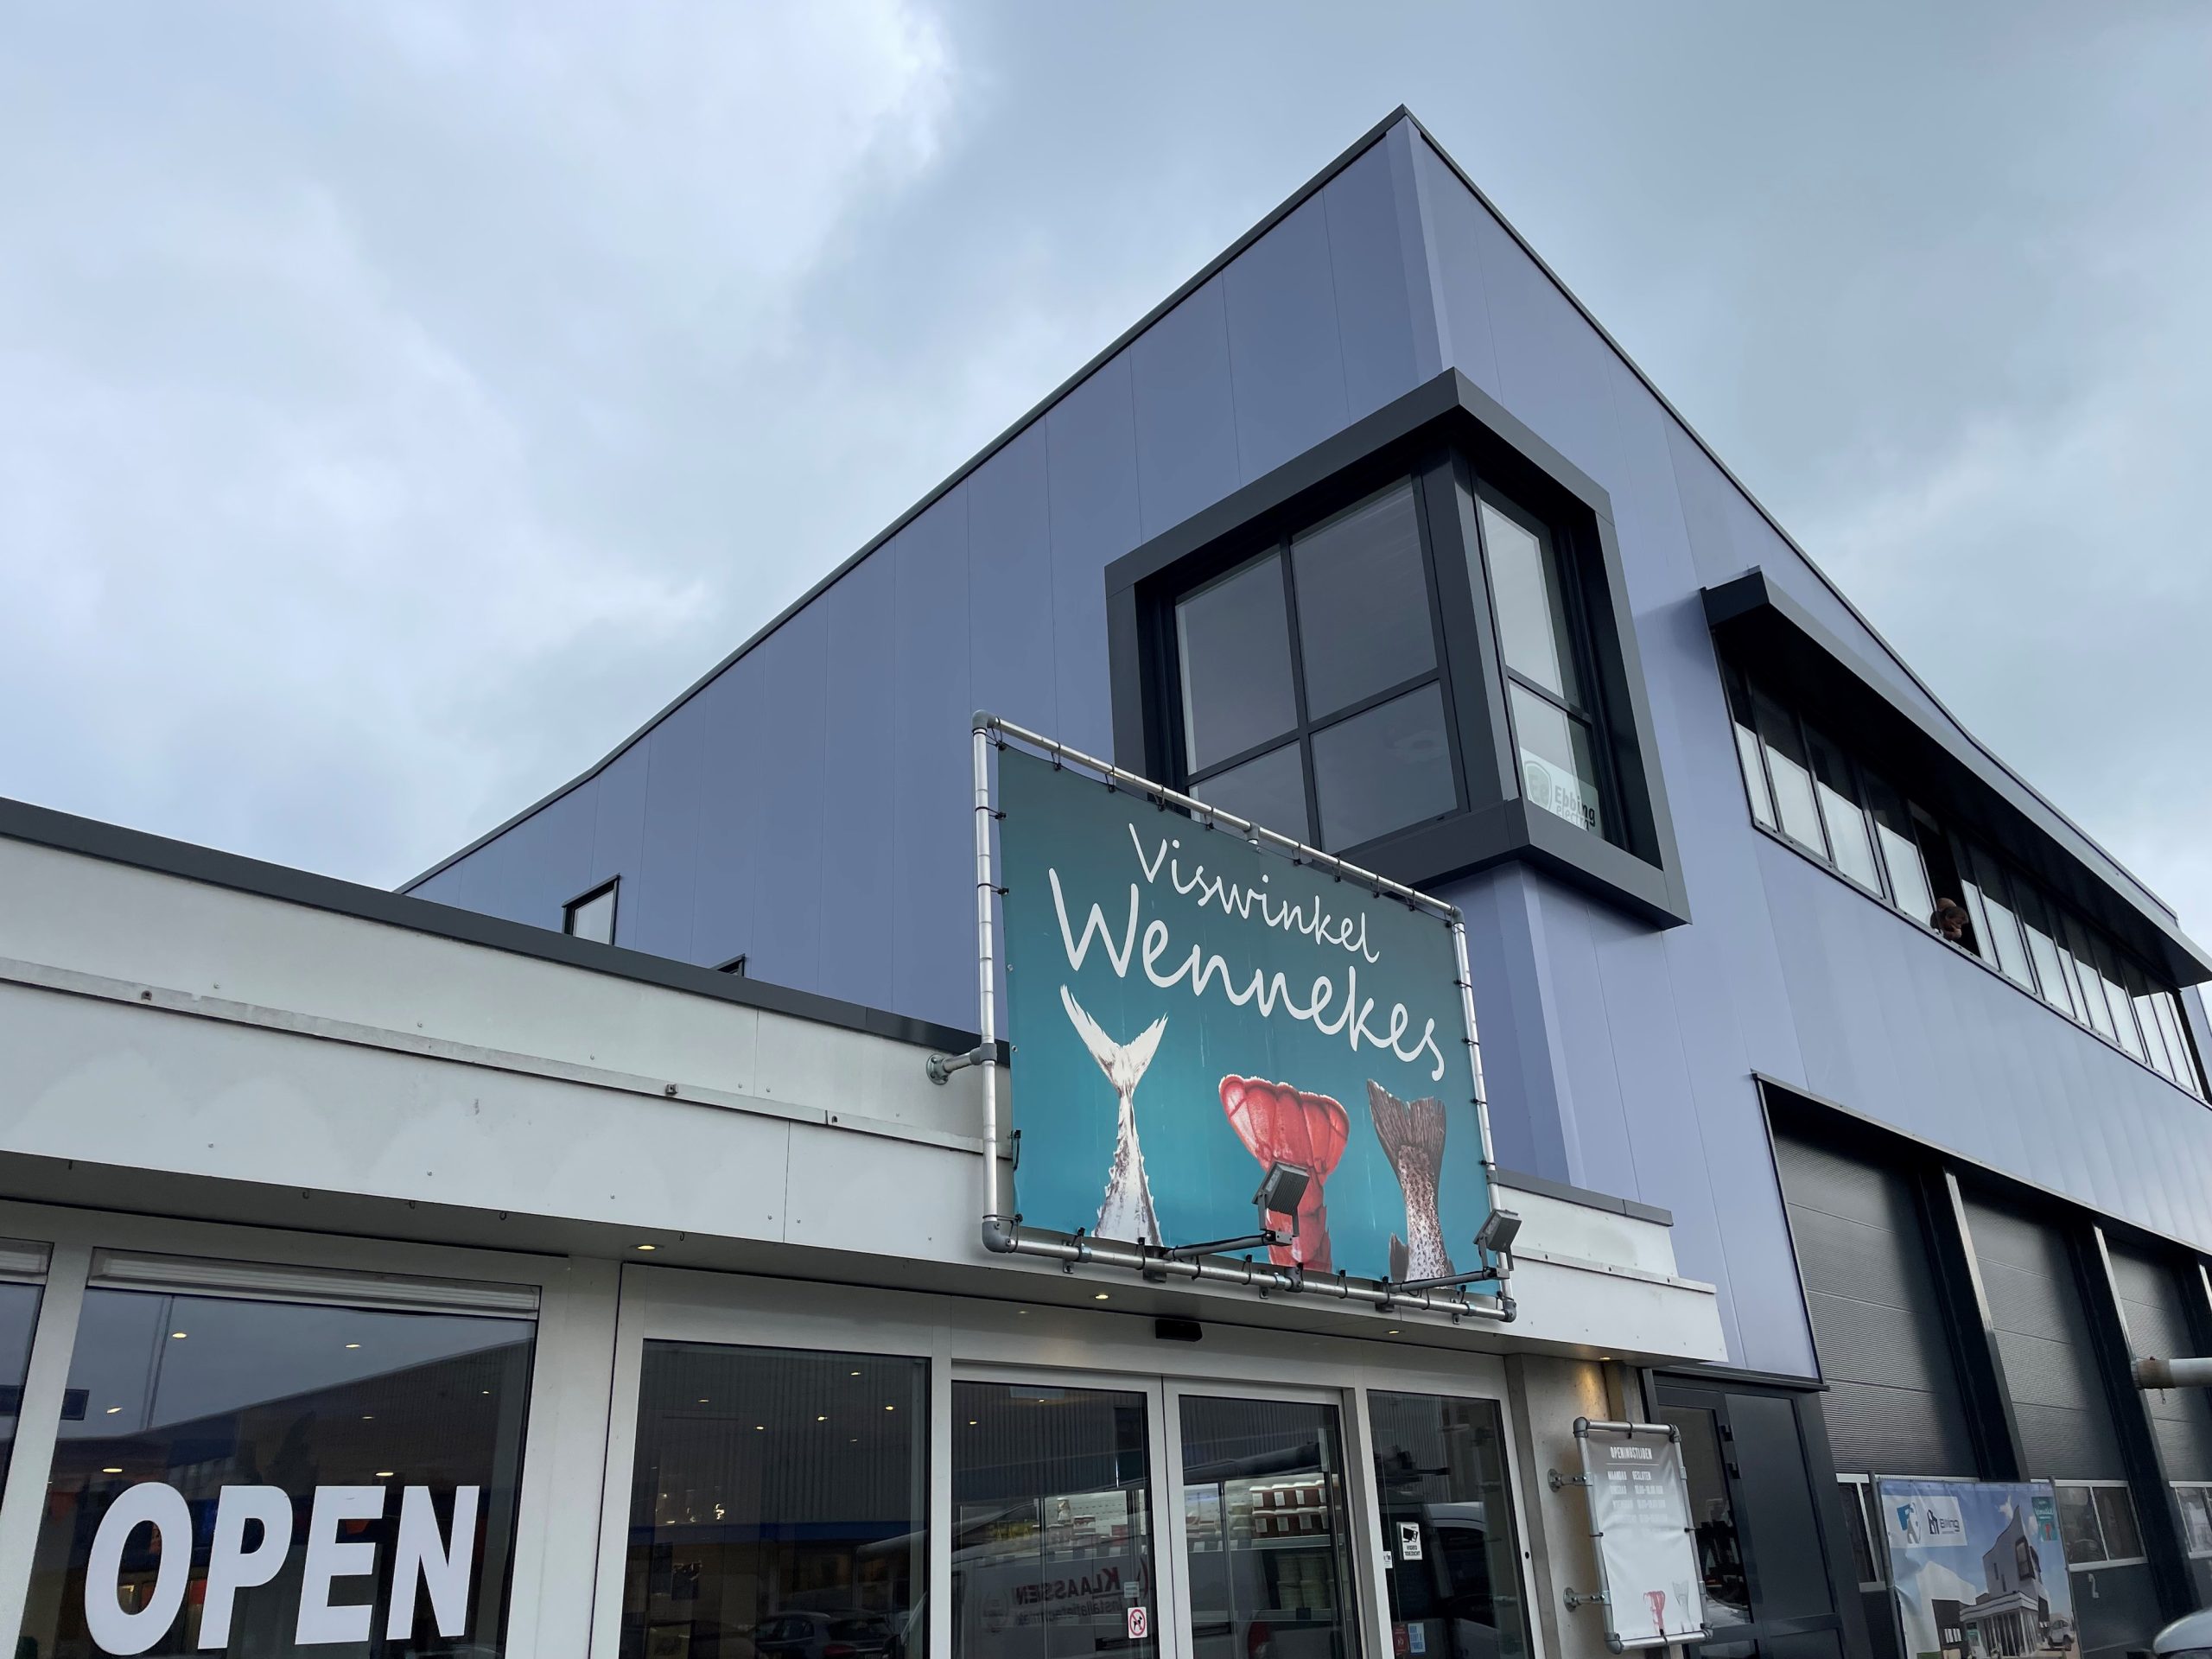 Viswinkel Wennekes